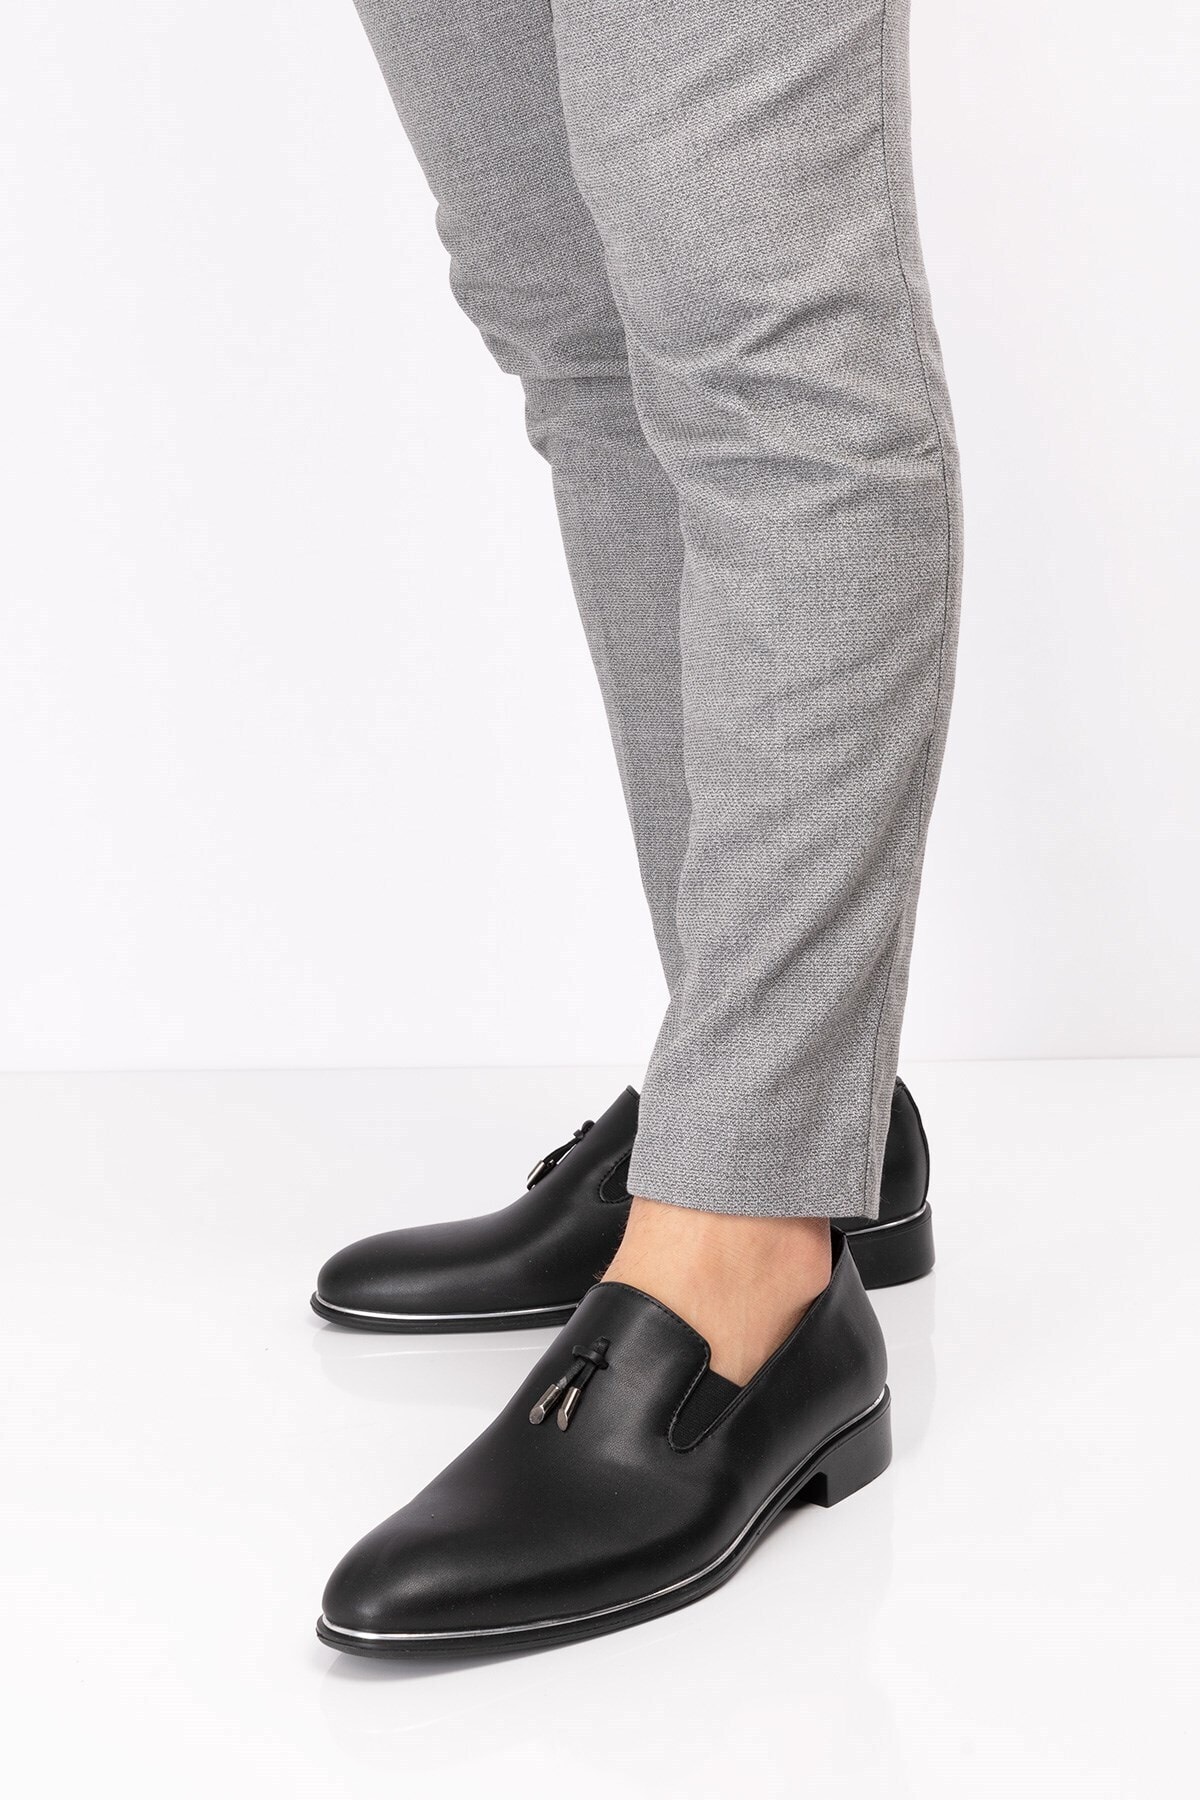 maximoda Erkek Klasik Damatlık Corcuk Model Rugan Ve Mat Klasik Ayakkabı